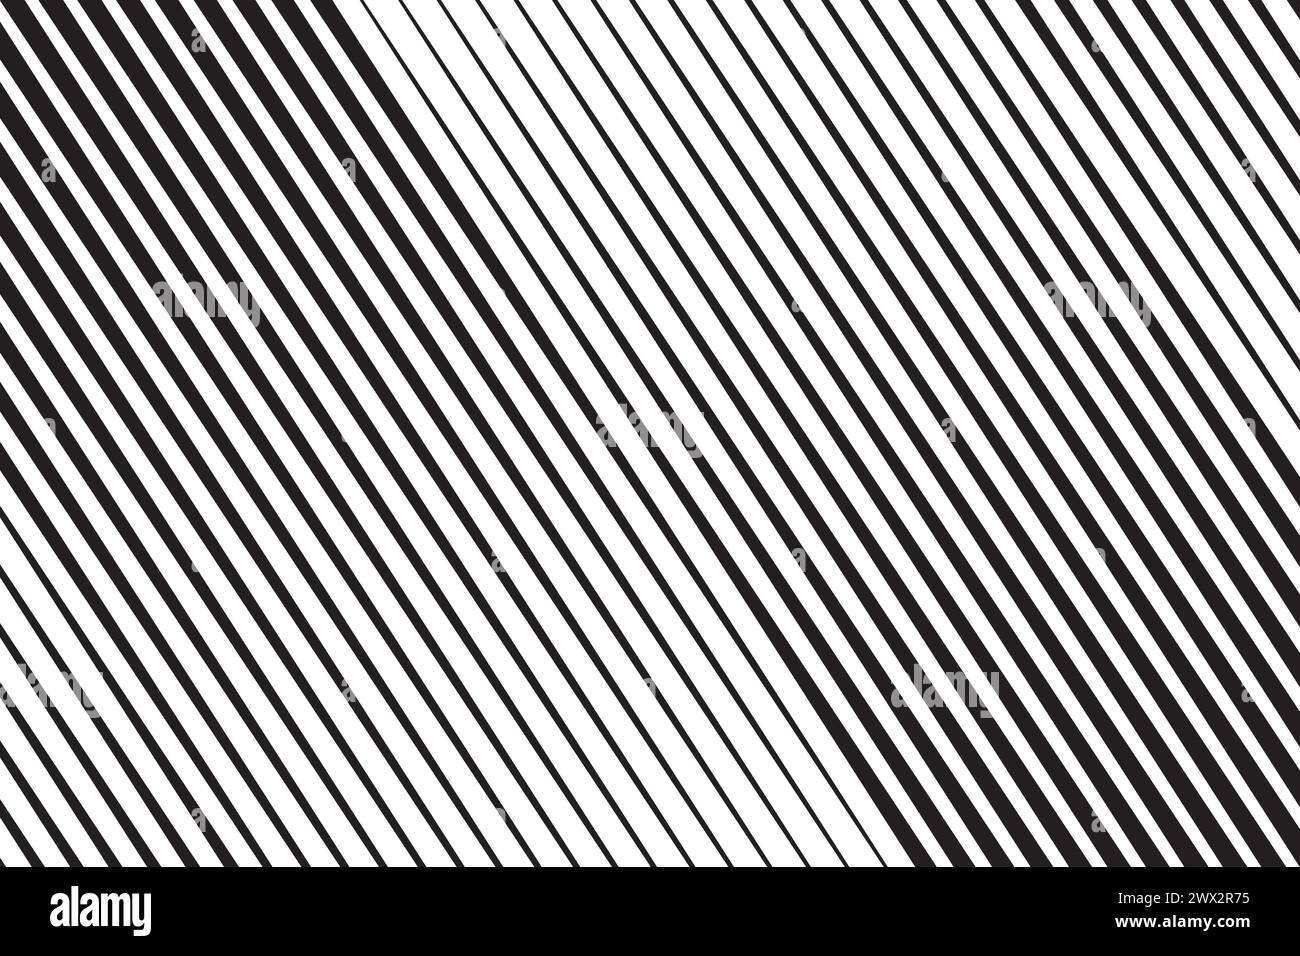 Motif de lignes diagonales. Bandes parallèles inclinées noires sur fond blanc. Impression de bandes droites obliques. Des traînées inclinées apparaissent sur le papier peint. Design abstrait Illustration de Vecteur